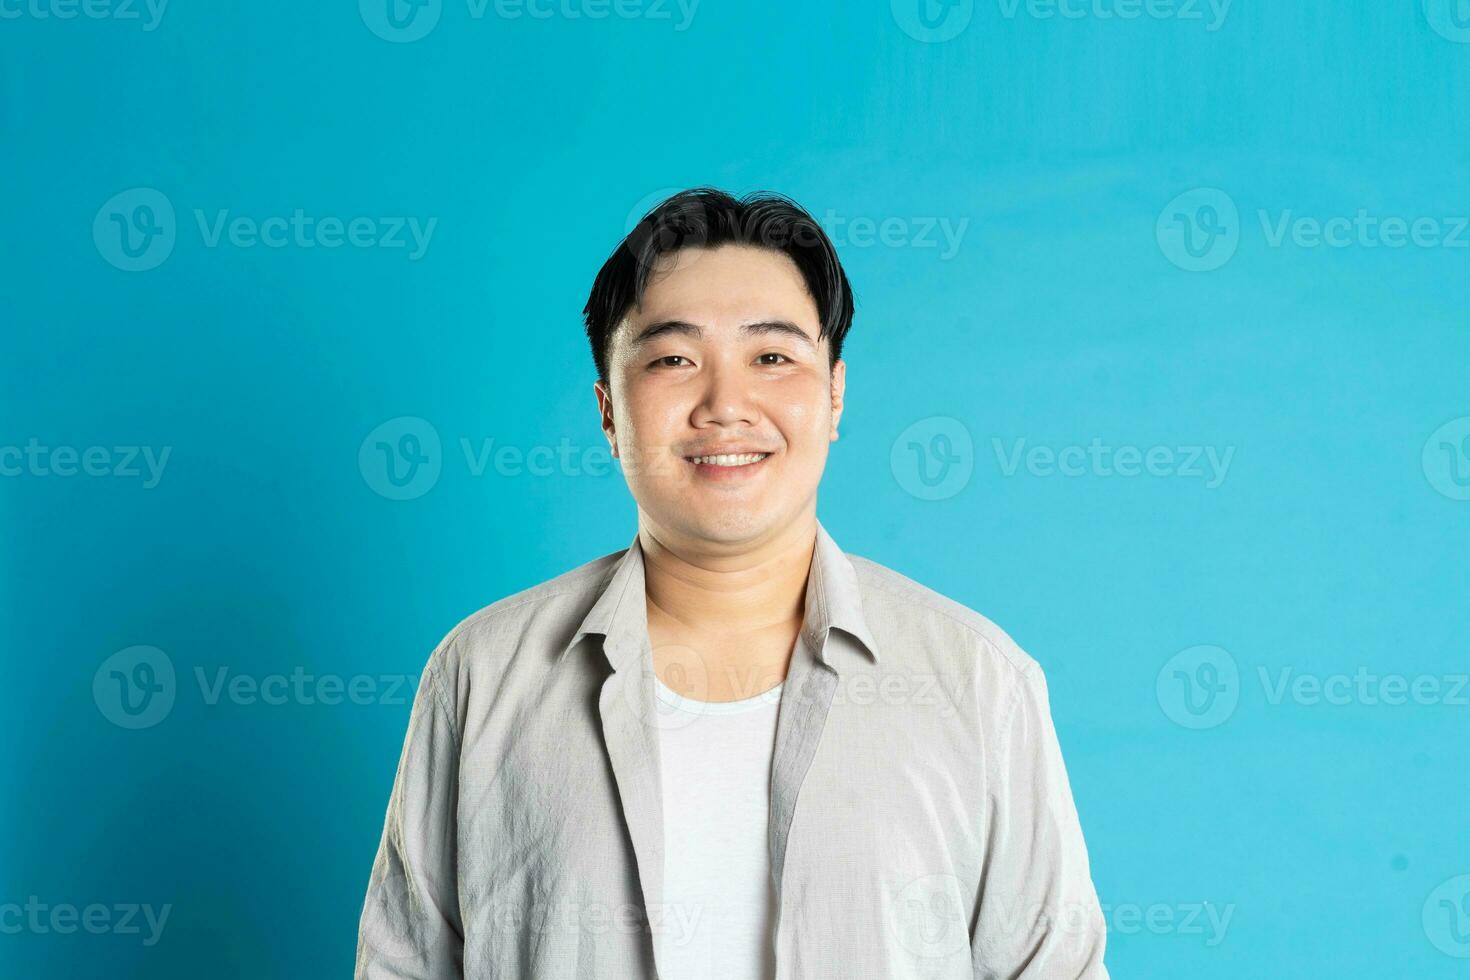 portret van een Aziatisch vent poseren Aan een blauw achtergrond foto